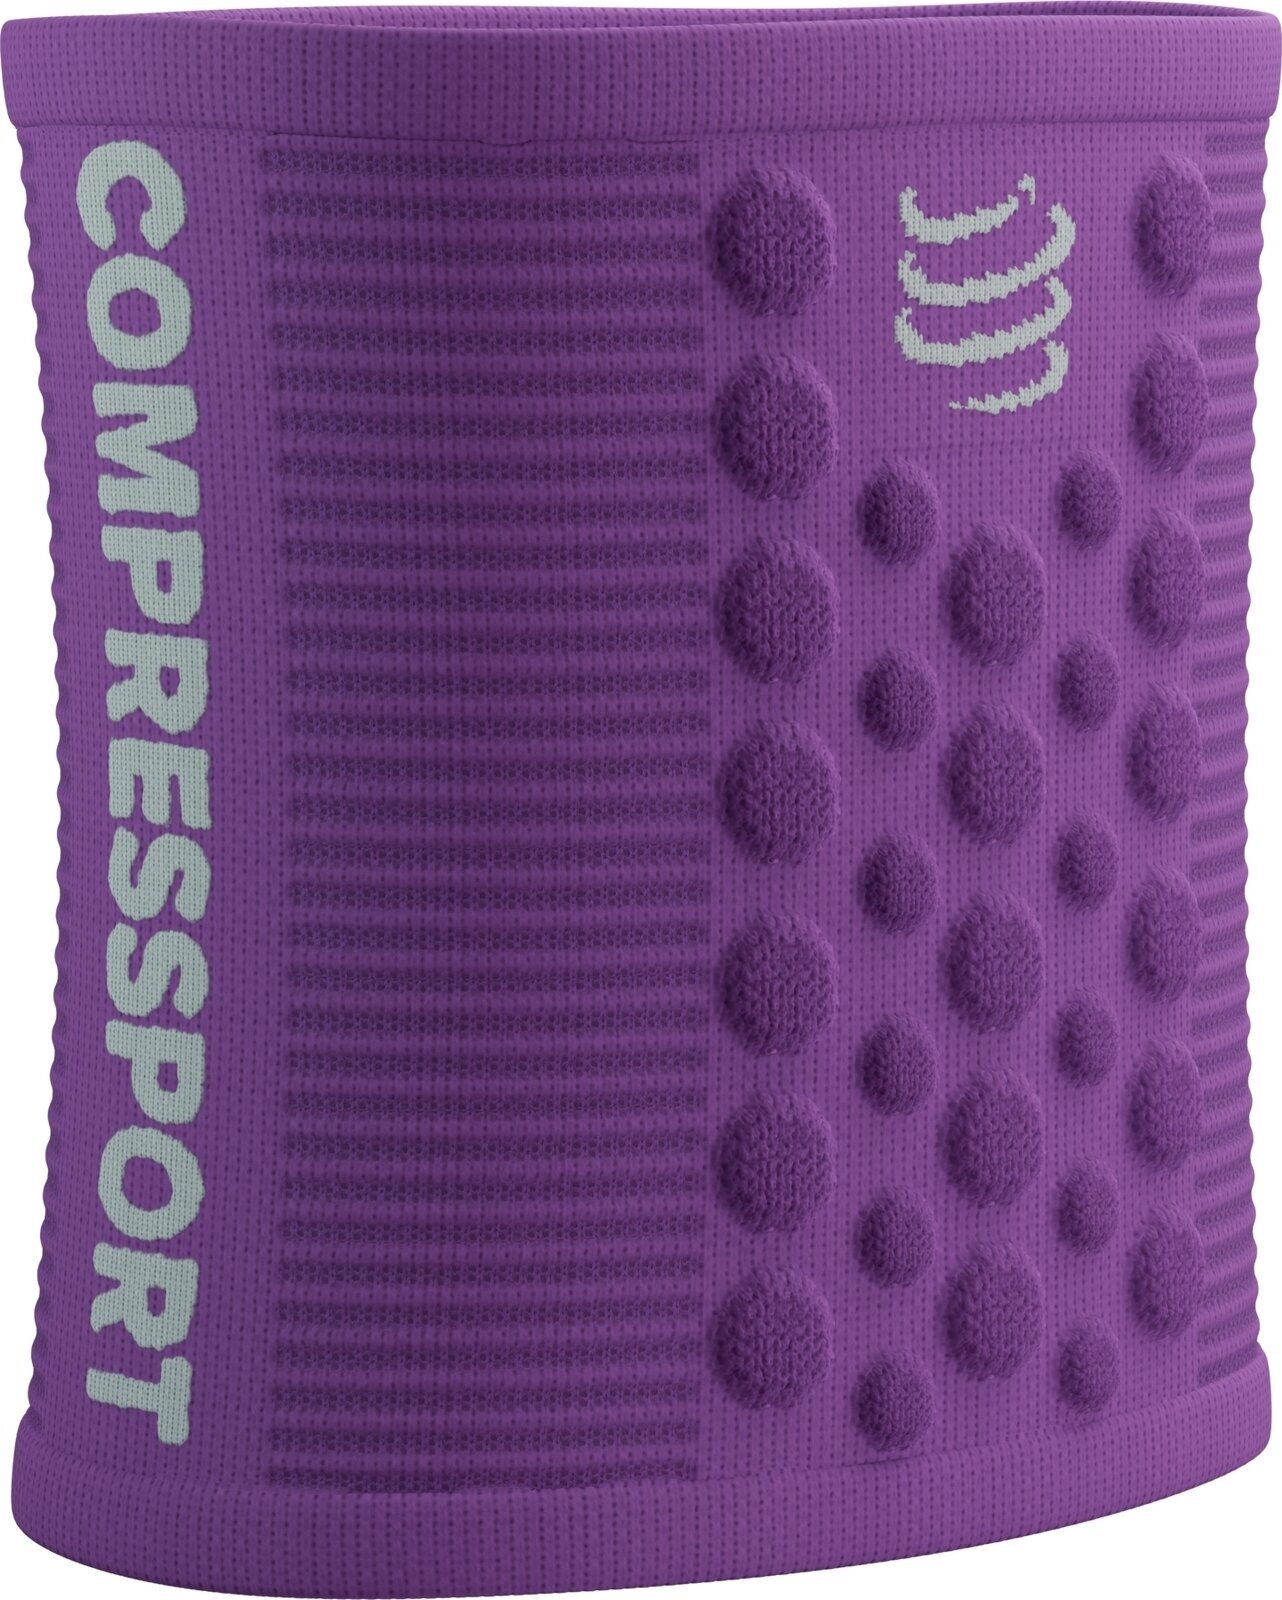 Bežecké návleky na ruky Compressport Sweatbands 3D.Dots Royal Lilac/White UNI Bežecké návleky na ruky